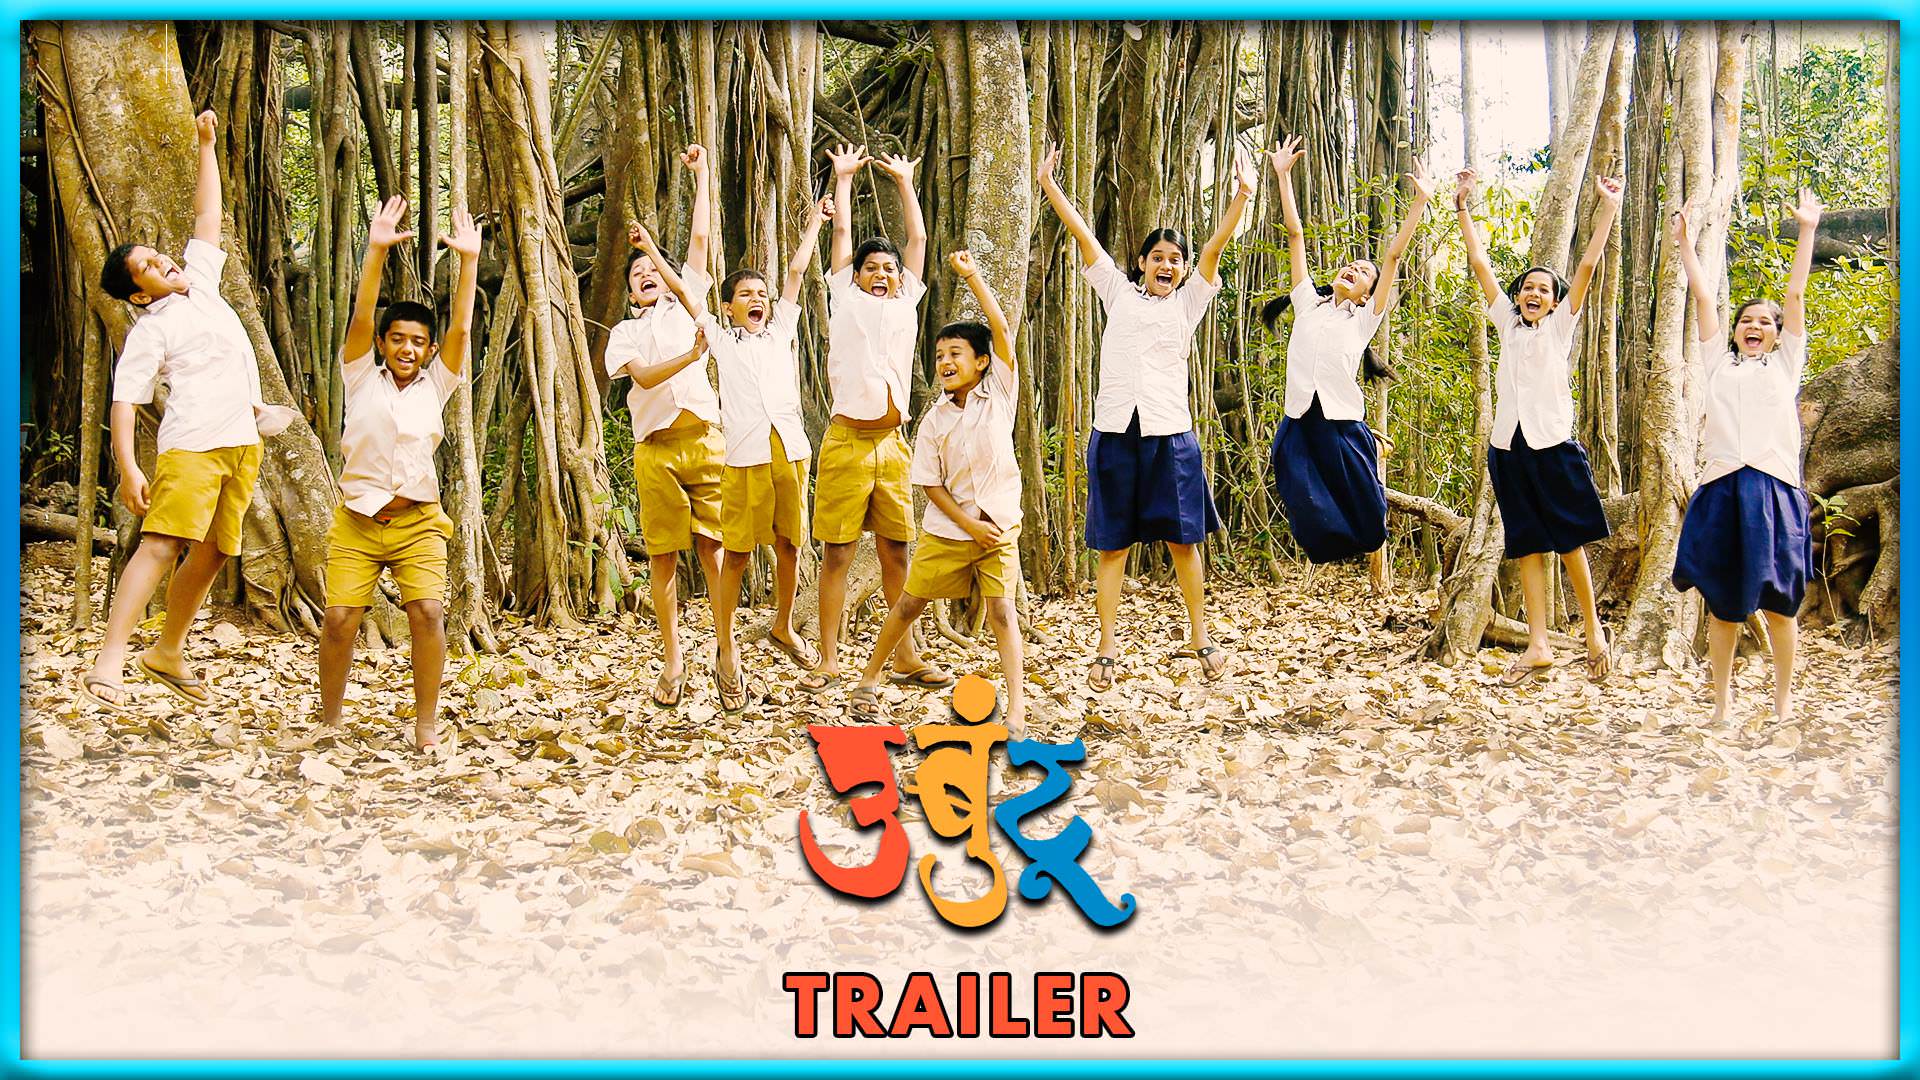 Ubuntu Trailer (Marathi Movie) - Sarang Sathaye, Bhagyashree Shankpal1920 x 1080